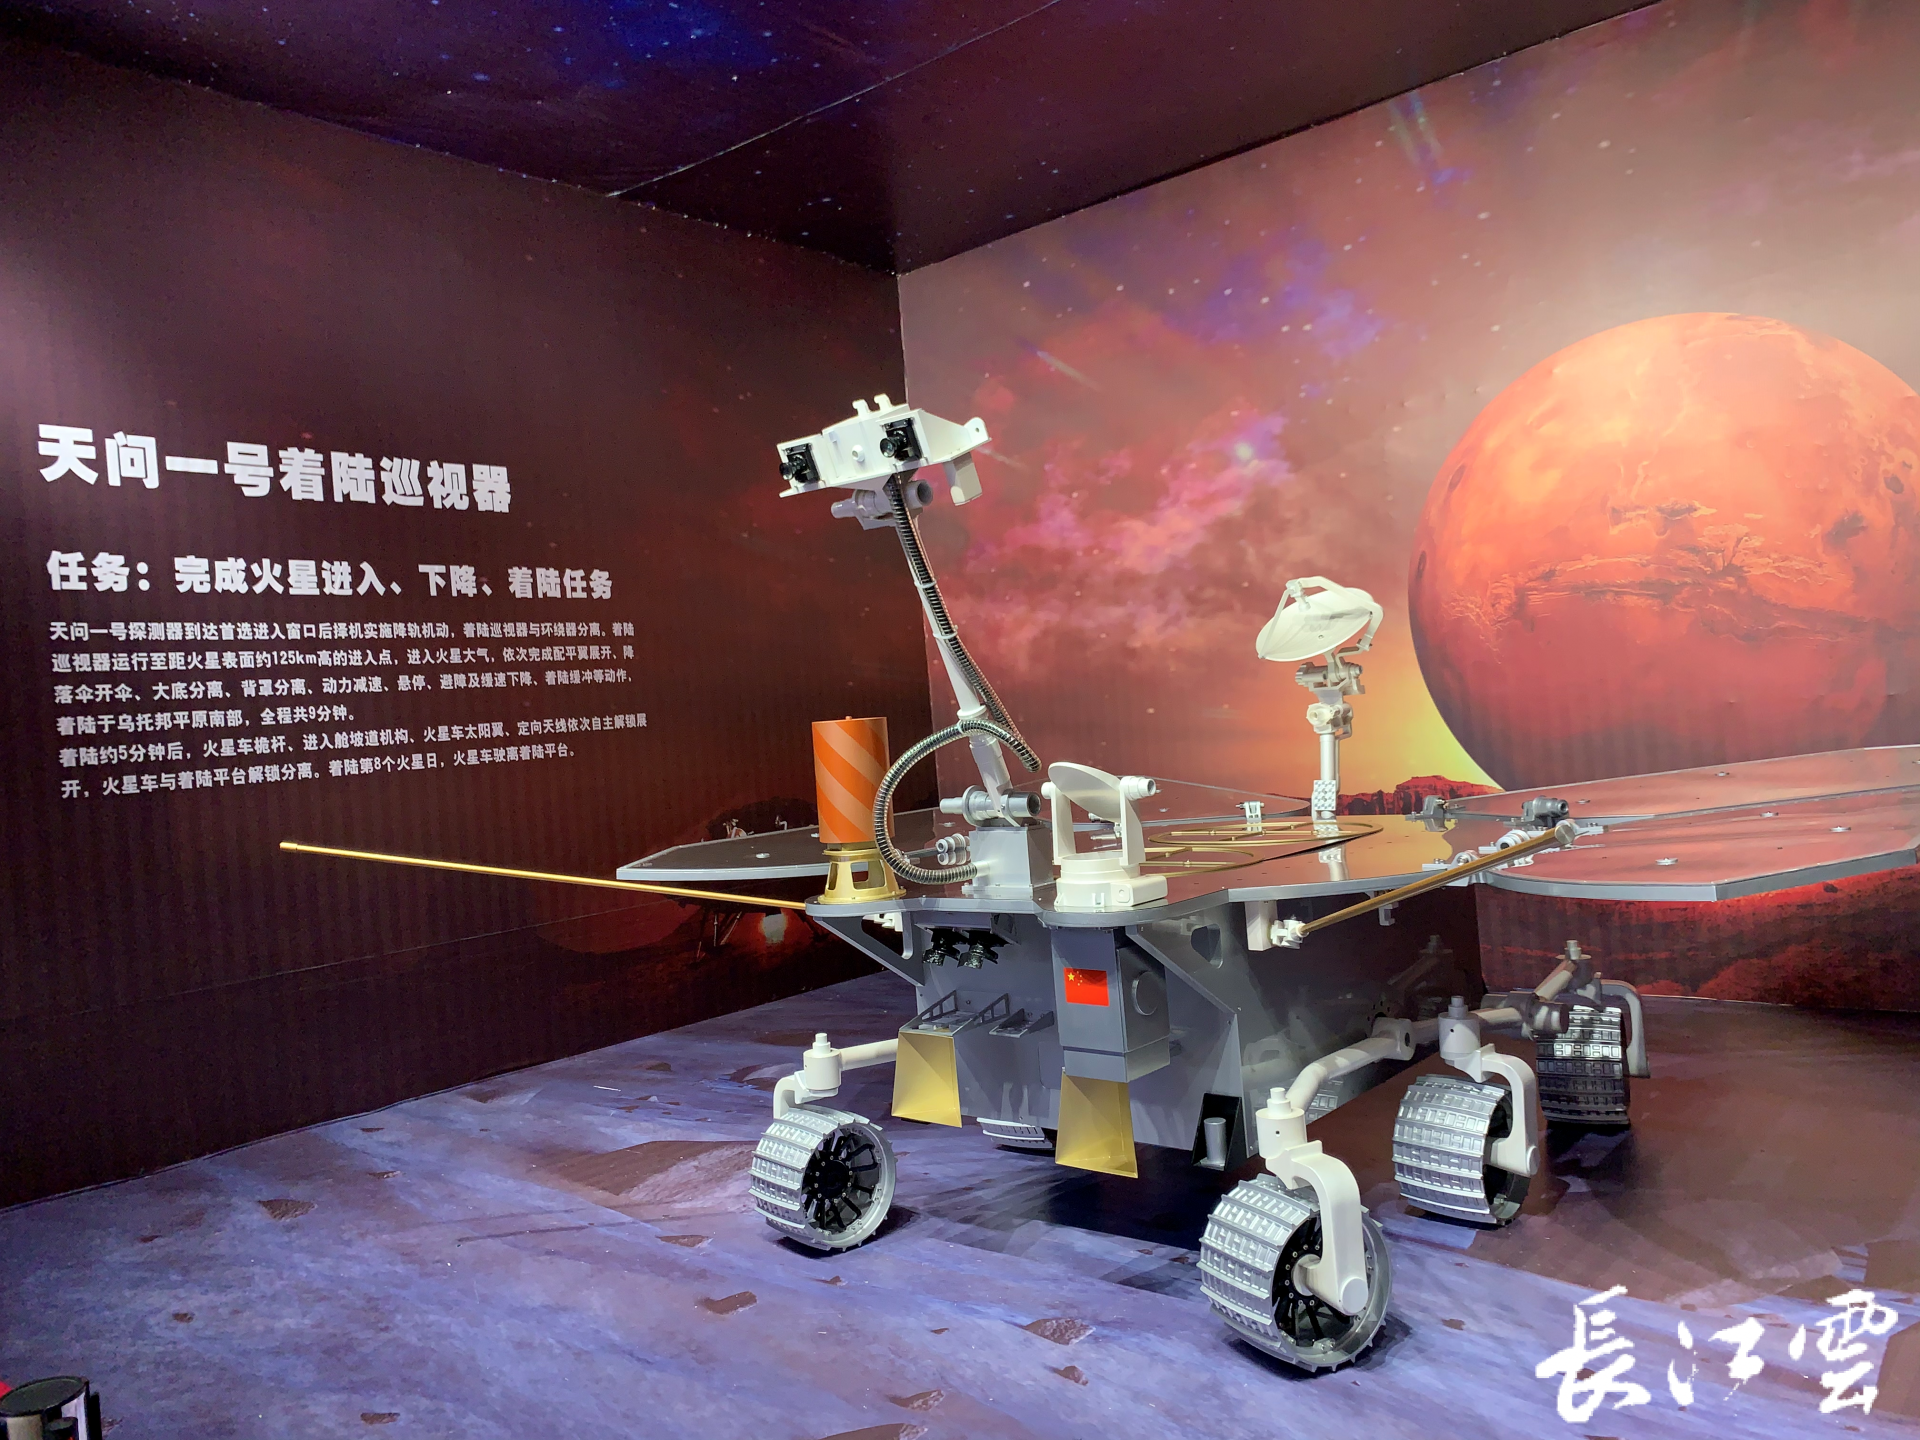 天问一号火星探测航天科普展来了端午小长假到宜昌秭归一饱眼福